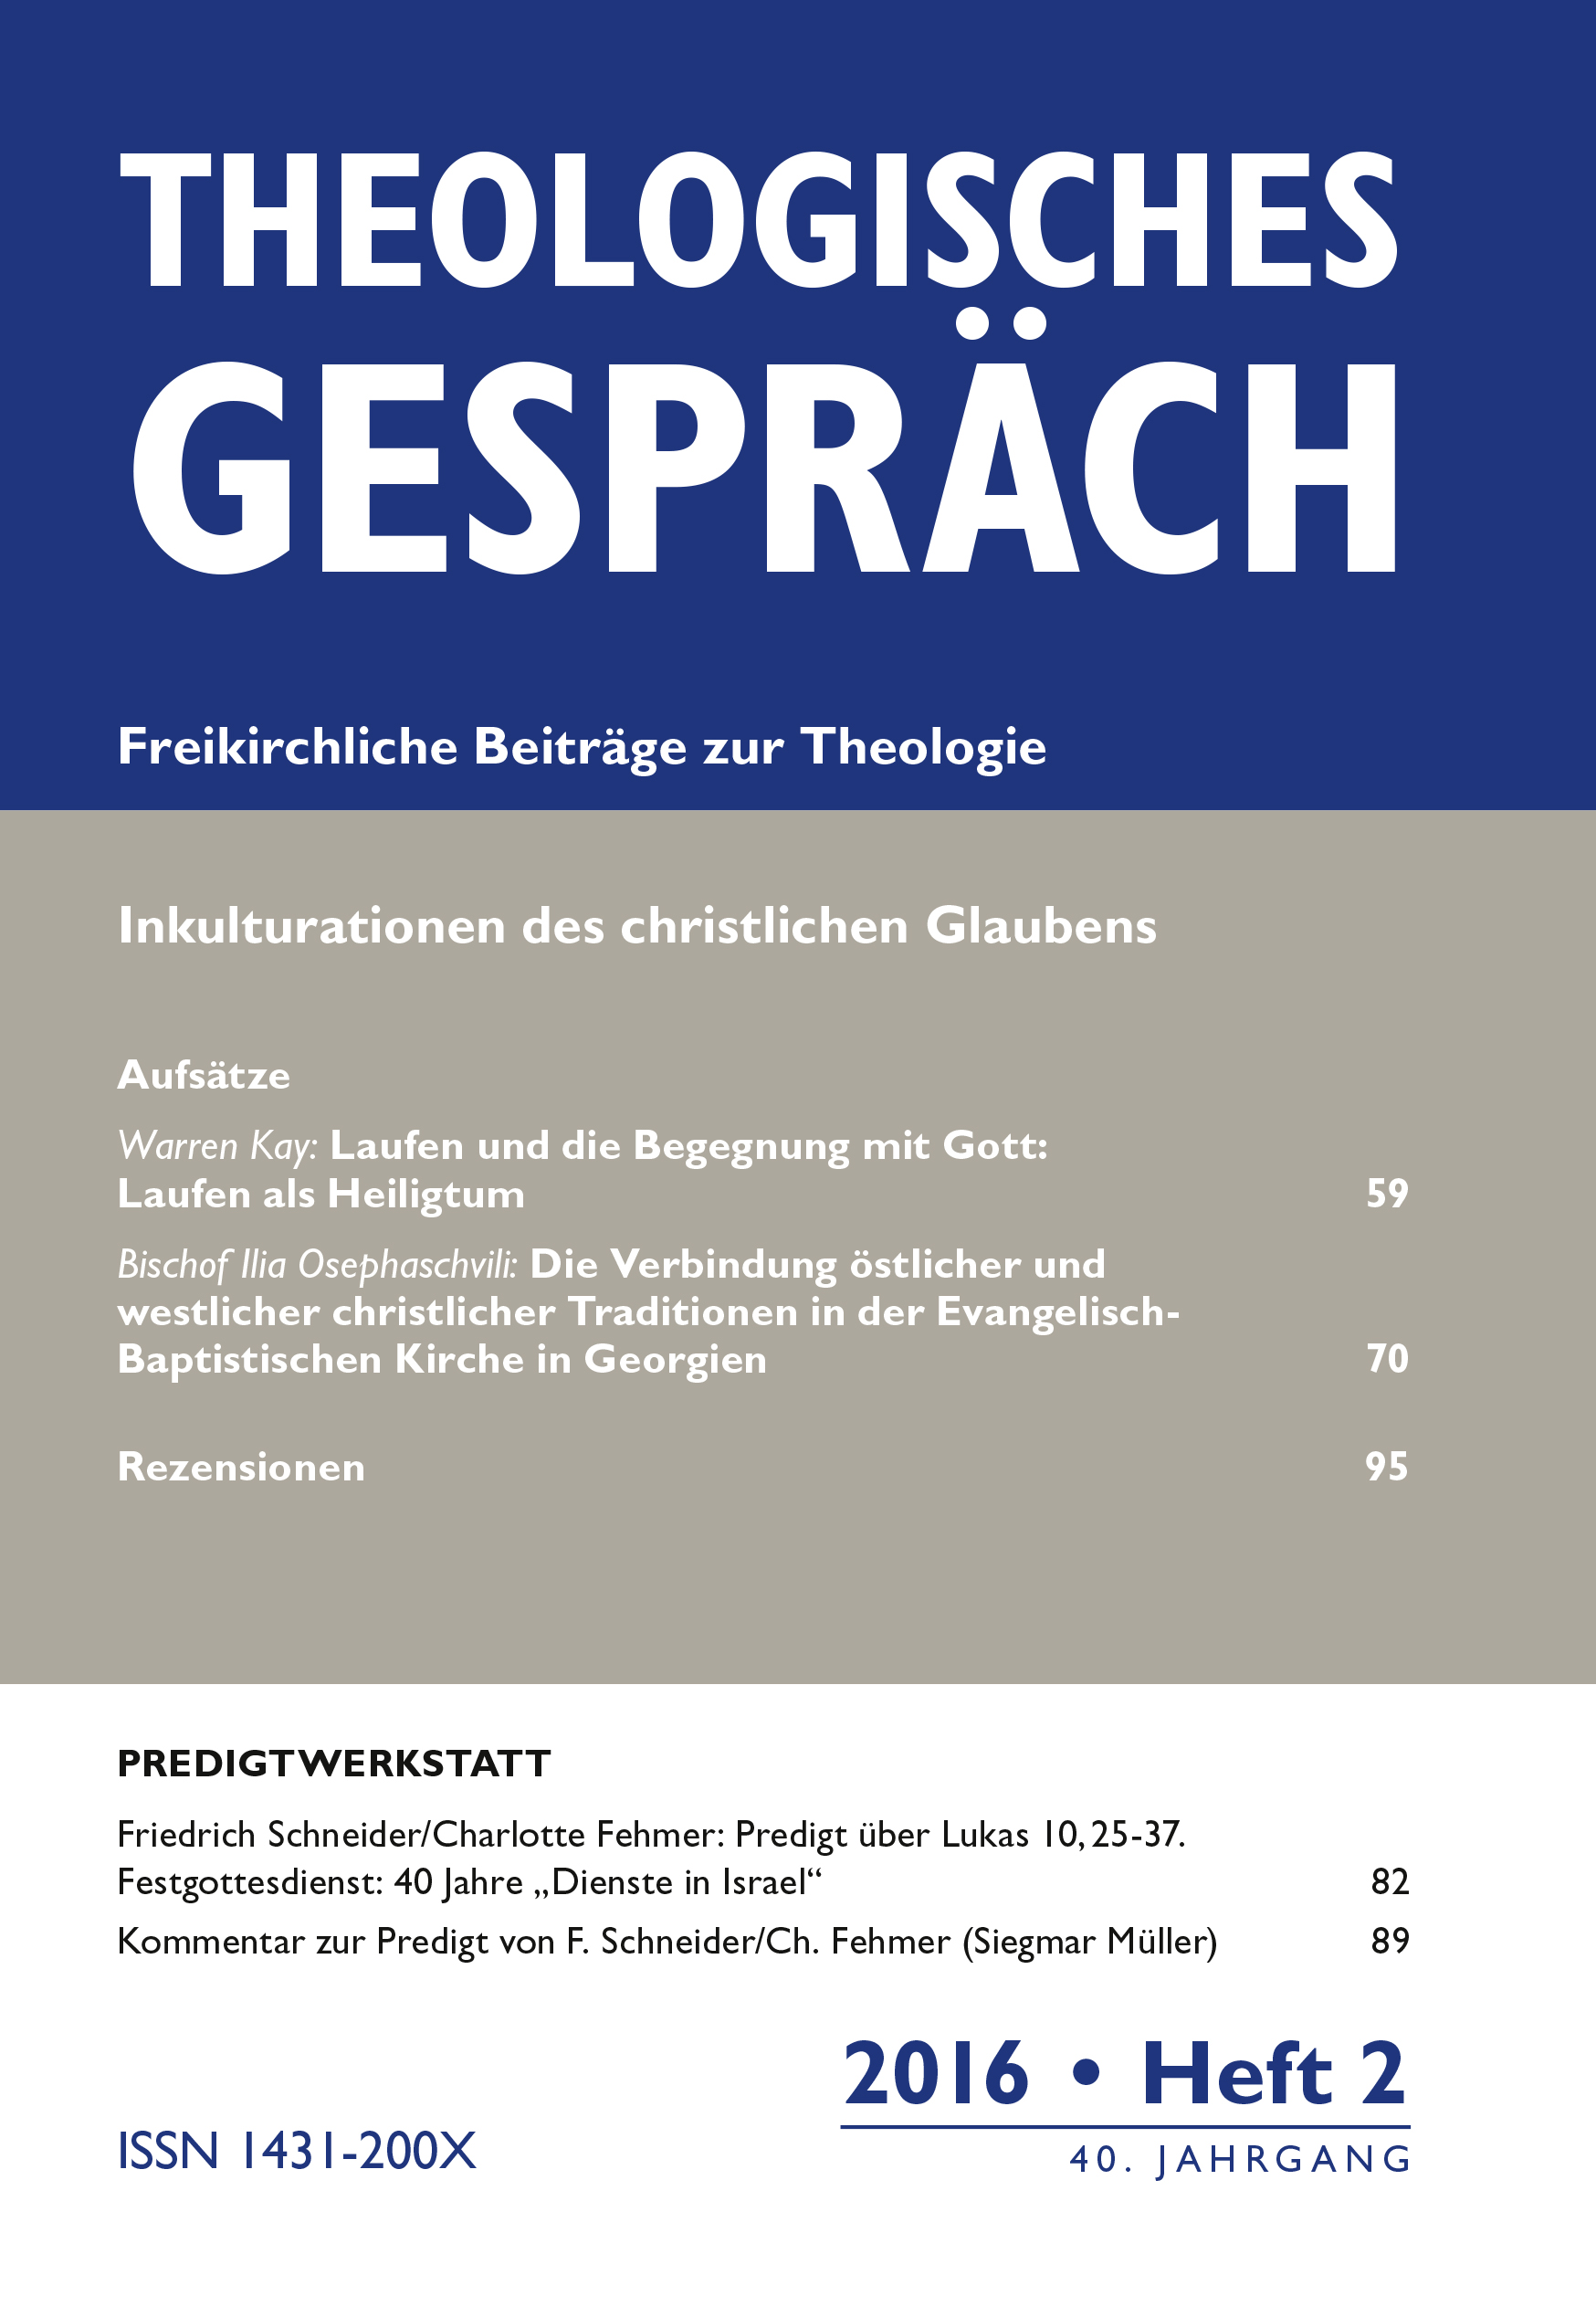 Theologisches Gespräch 02/2016